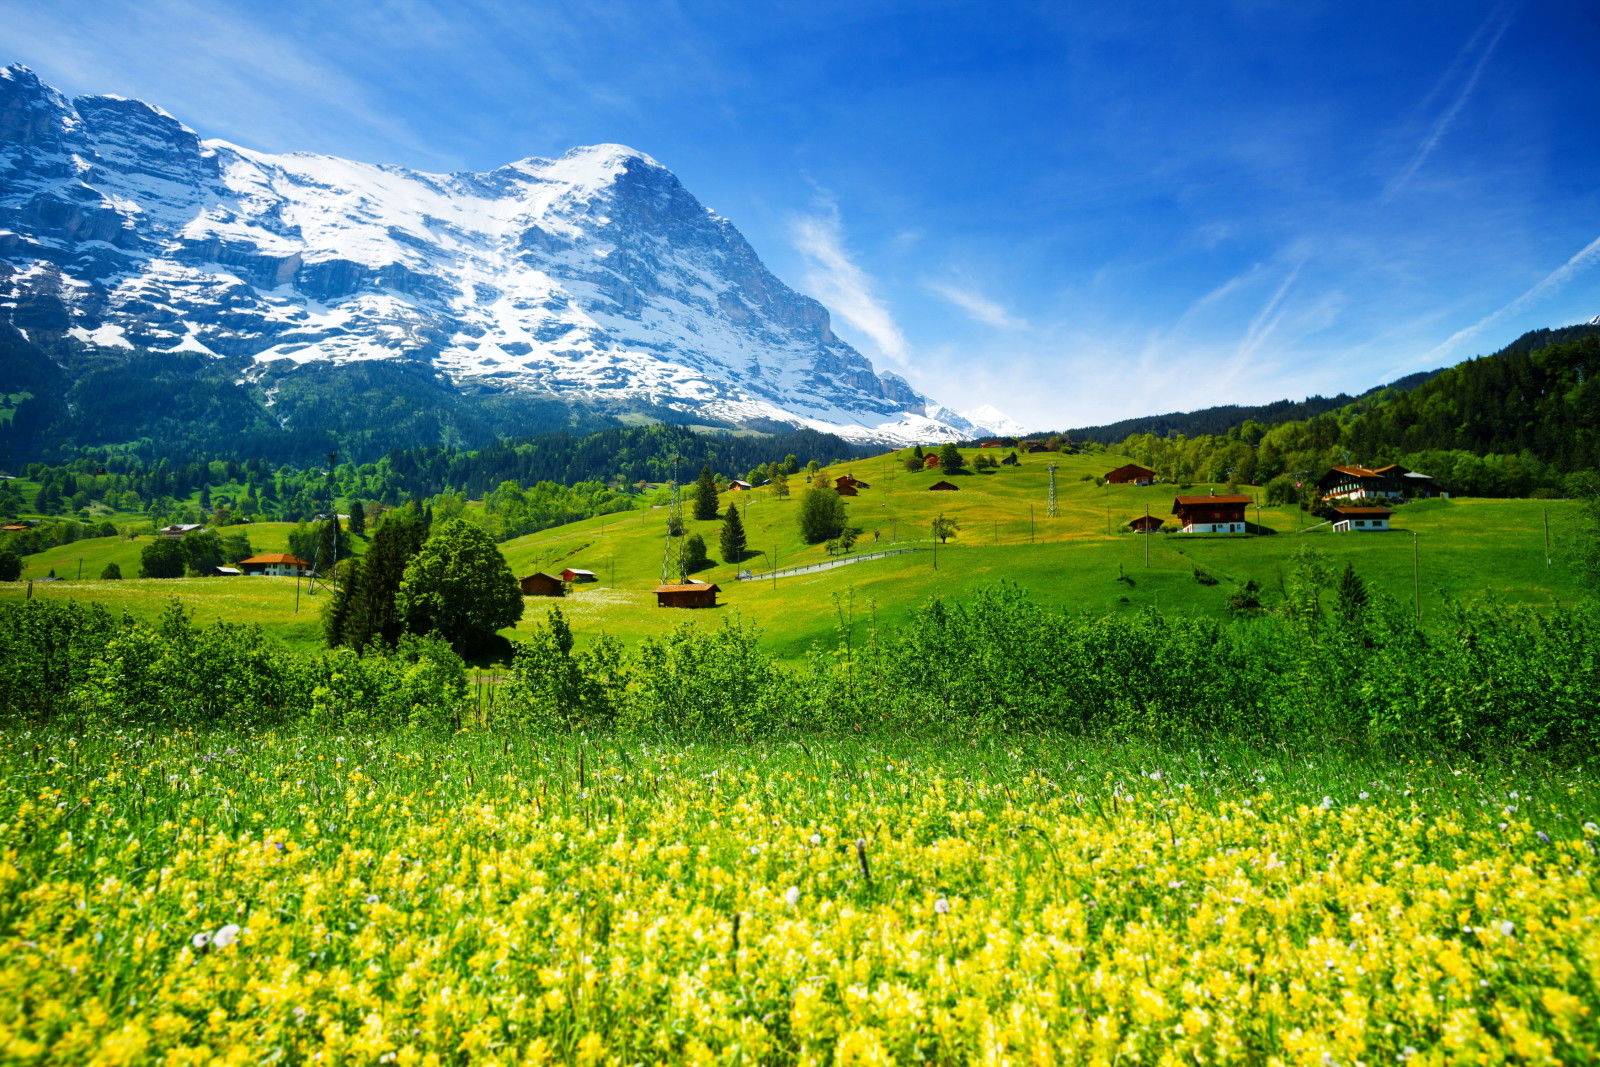 ป่า, หญ้า, ประเทศสวิสเซอร์แลนด์, ผักใบเขียว, สนาม, ดอกไม้, ภูเขา, หุบเขา